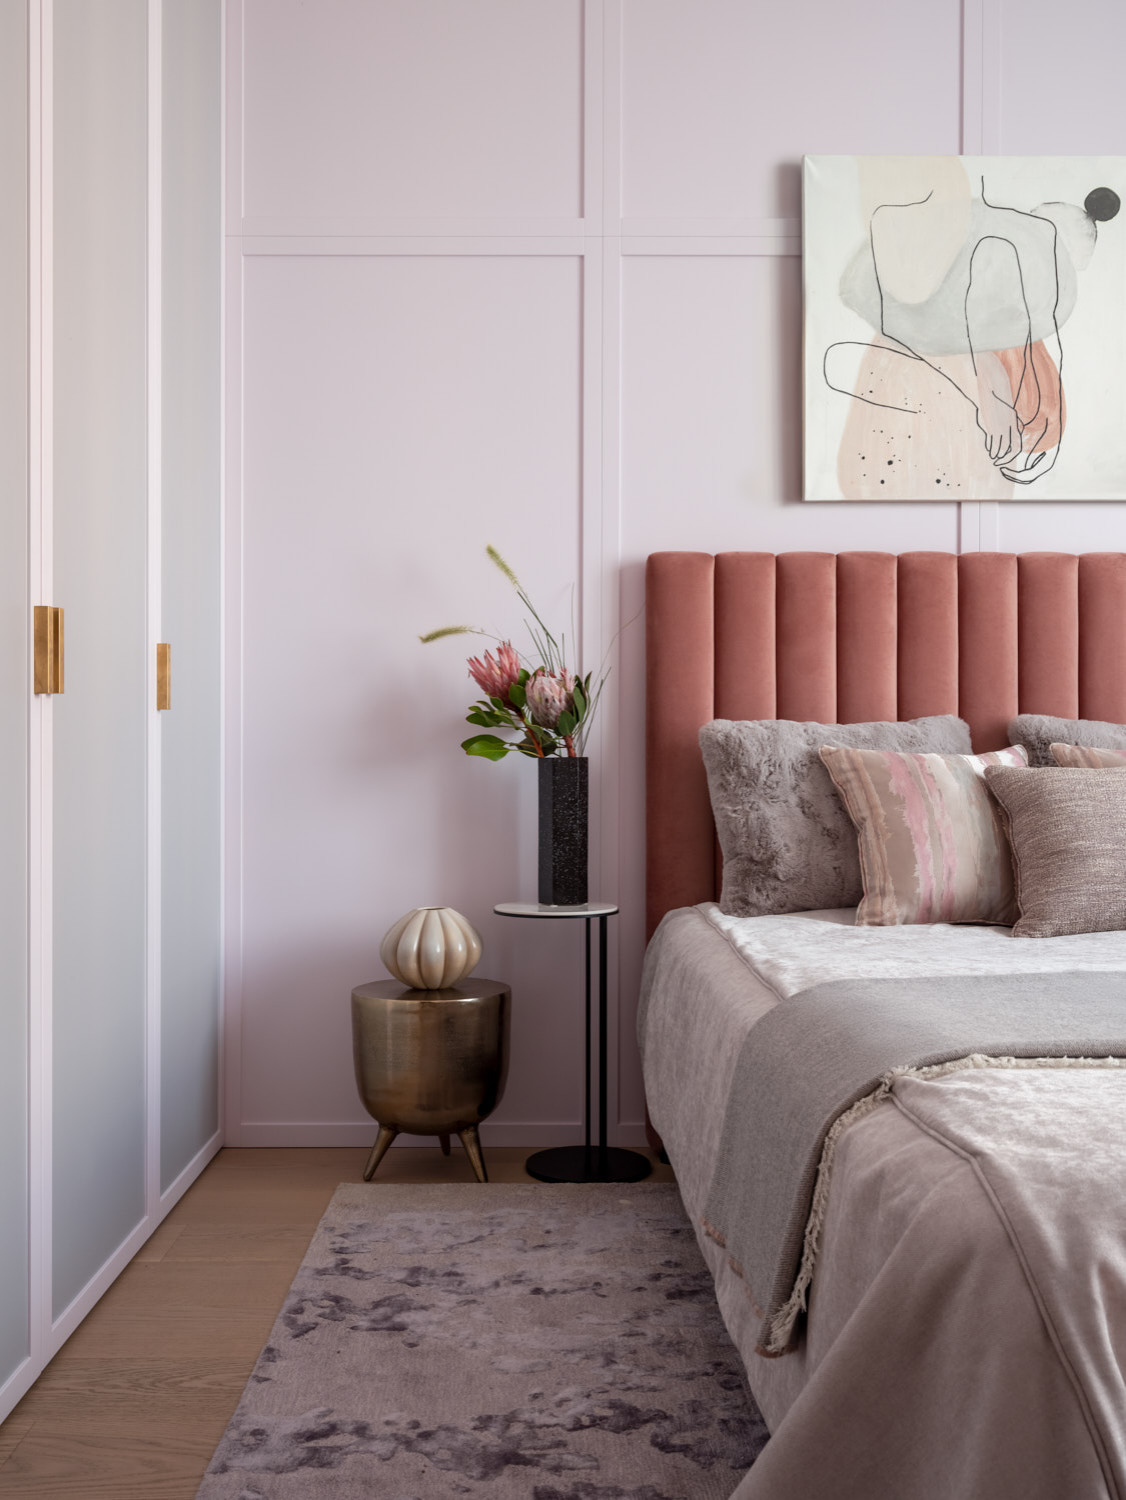 おしゃれな寝室 ピンクの壁 のインテリア画像 75選 22年8月 Houzz ハウズ